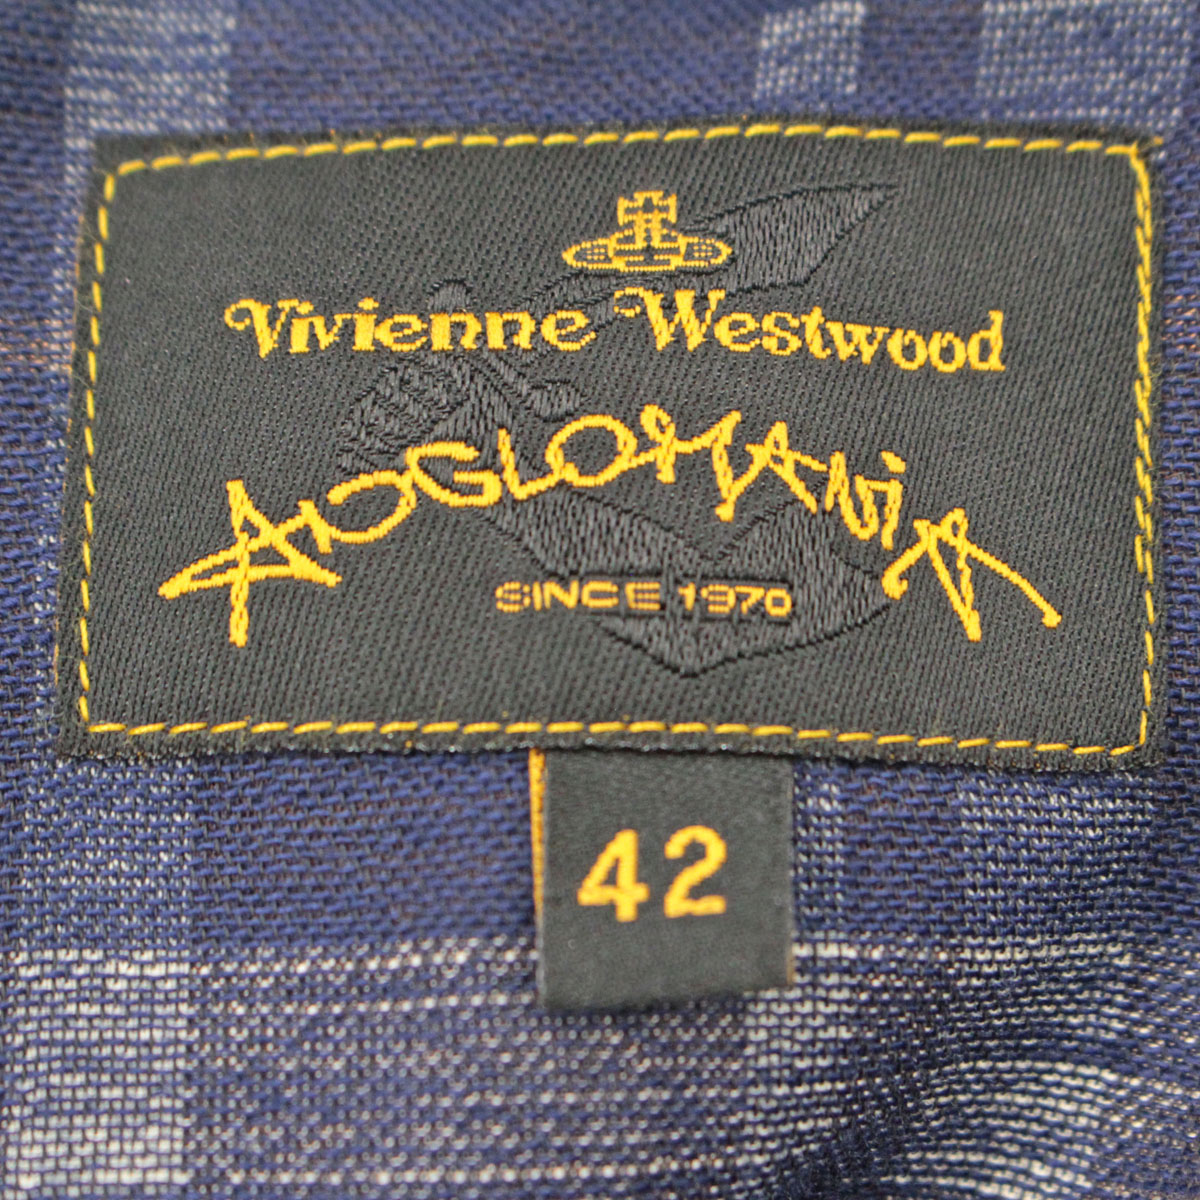 数量限定アウトレット最安価格 中古 Vivienne Westwood ヴィヴィアンウエストウッドアングロマニア チェック柄 ボトムス サイズ42 変形スカート 青 ブラウン レディース